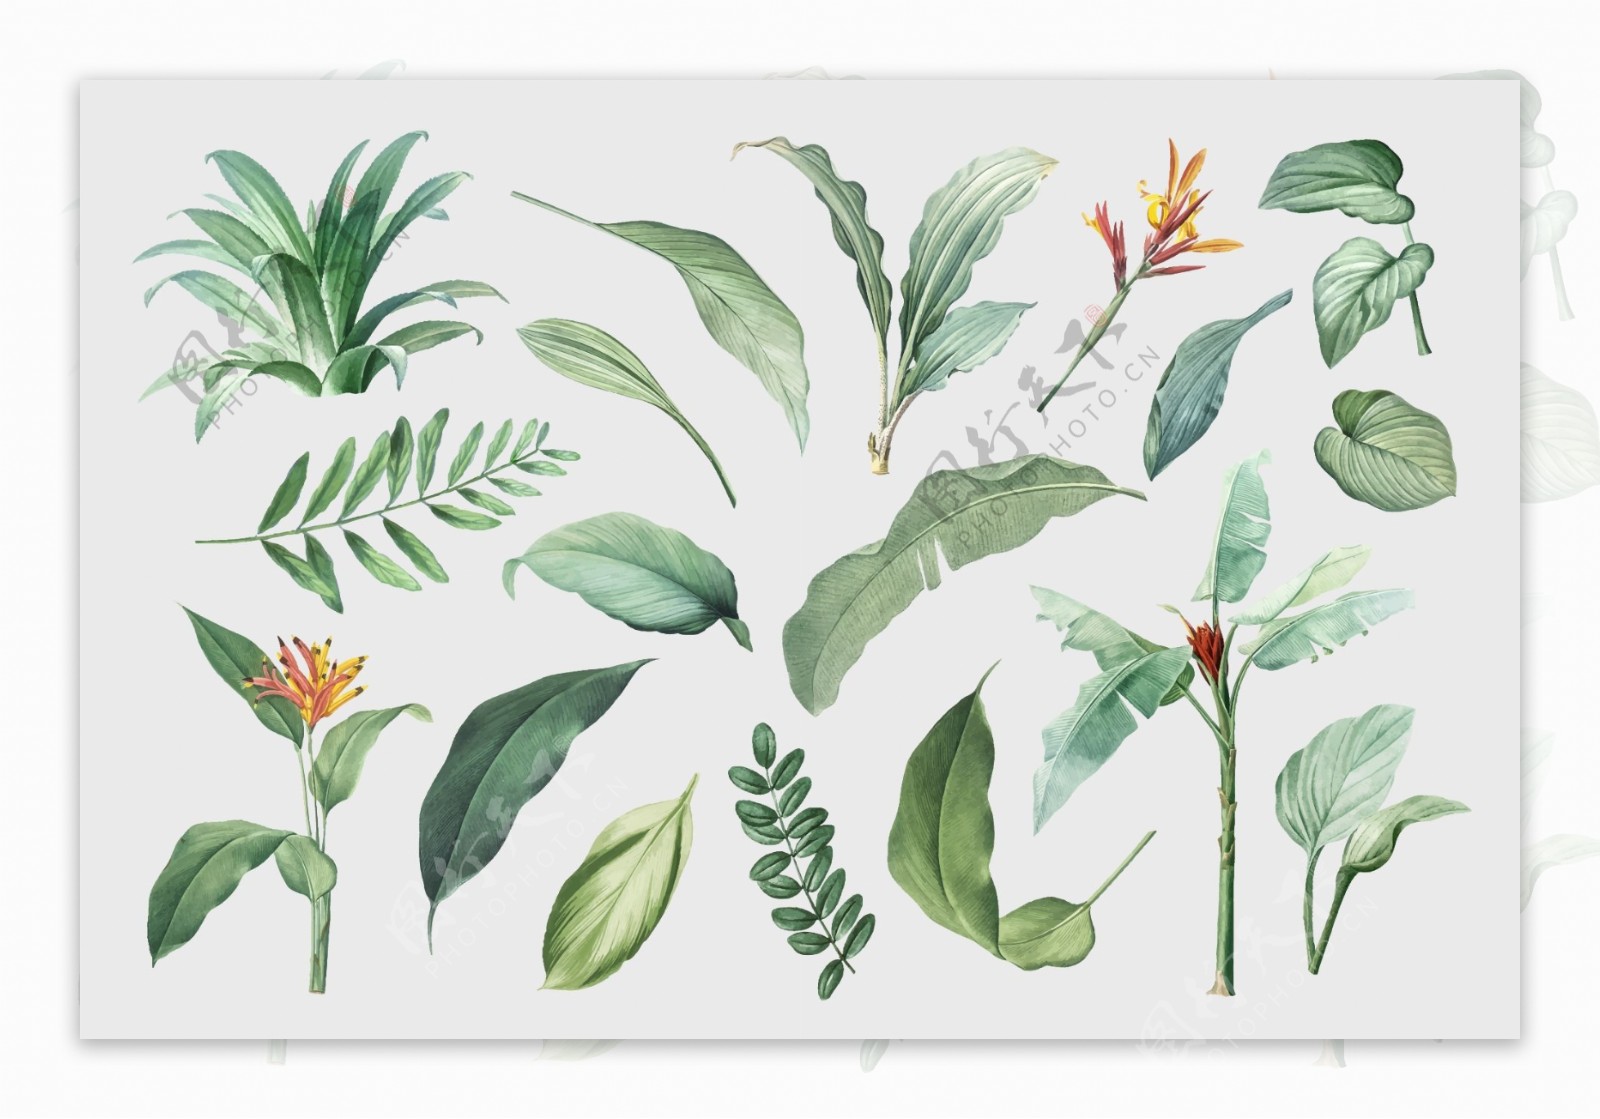 热带植物手绘清新叶子